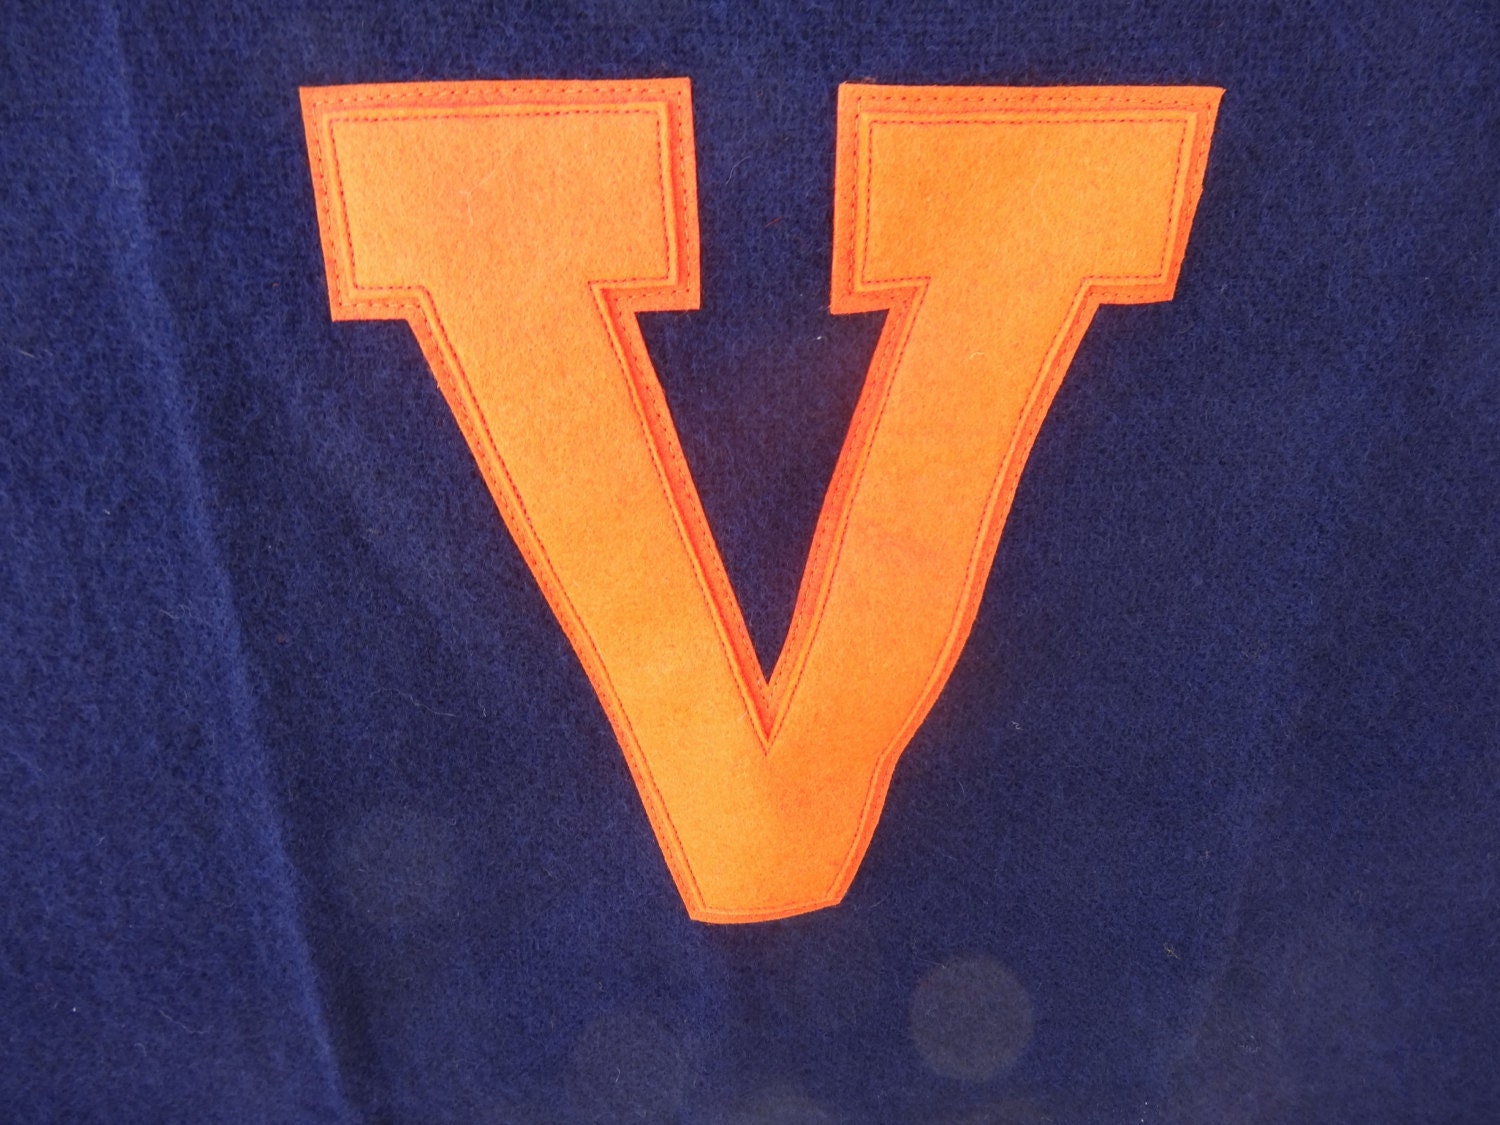 Vintage Wool Dark Blue Blanket With a Varsity Letter V Orange